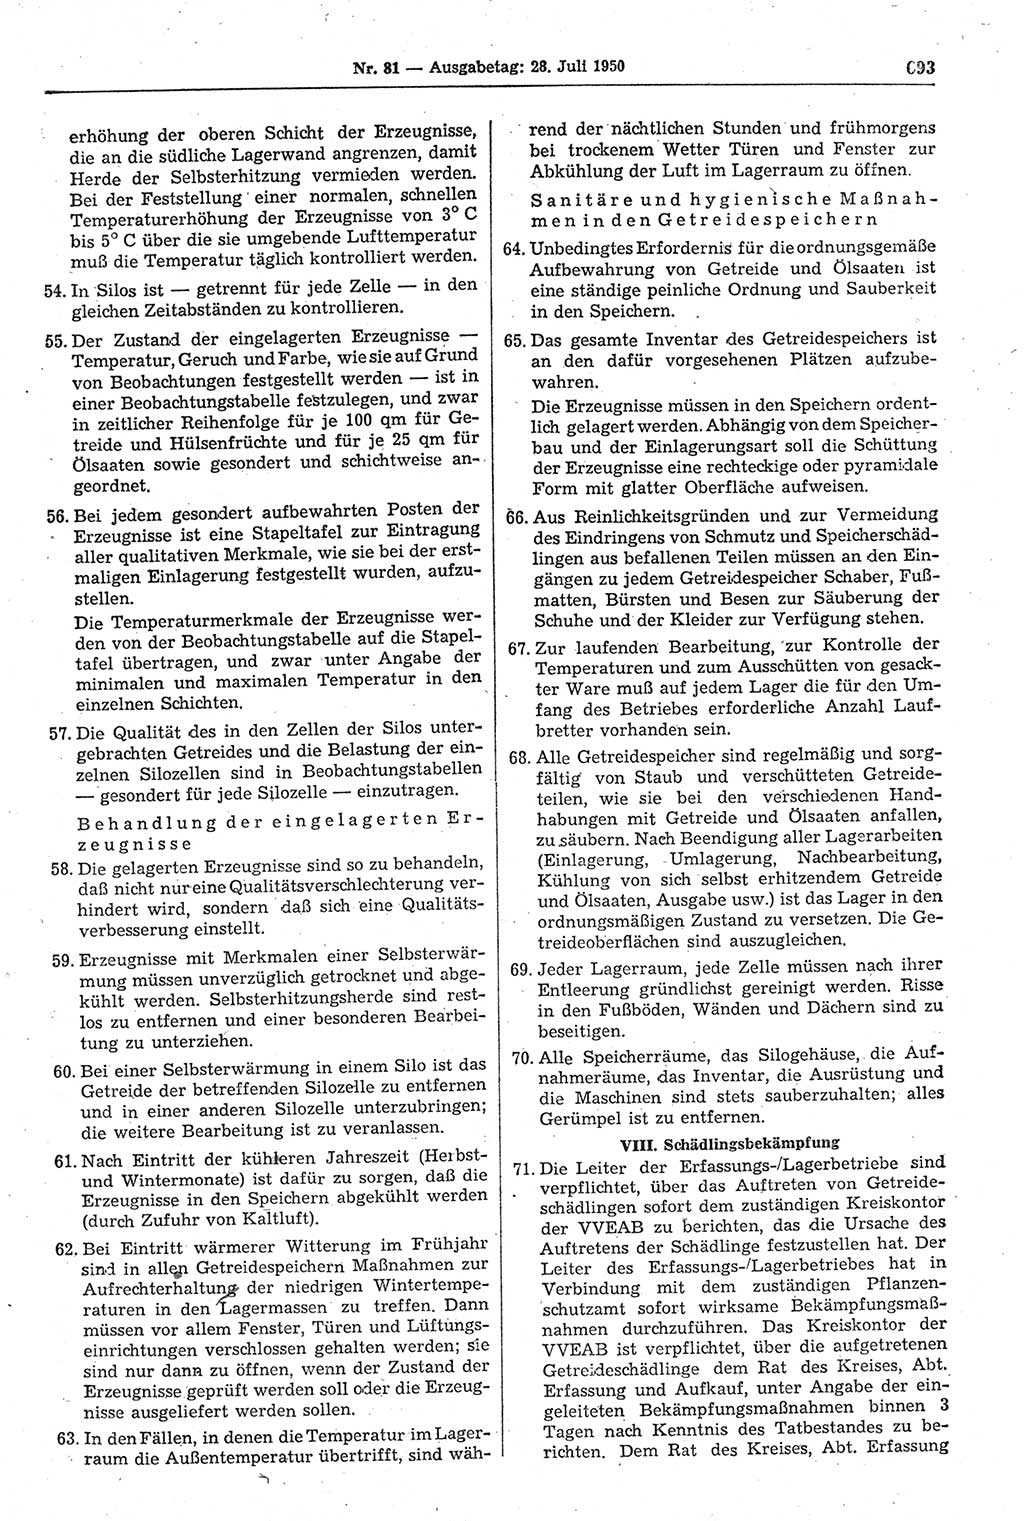 Gesetzblatt (GBl.) der Deutschen Demokratischen Republik (DDR) 1950, Seite 693 (GBl. DDR 1950, S. 693)